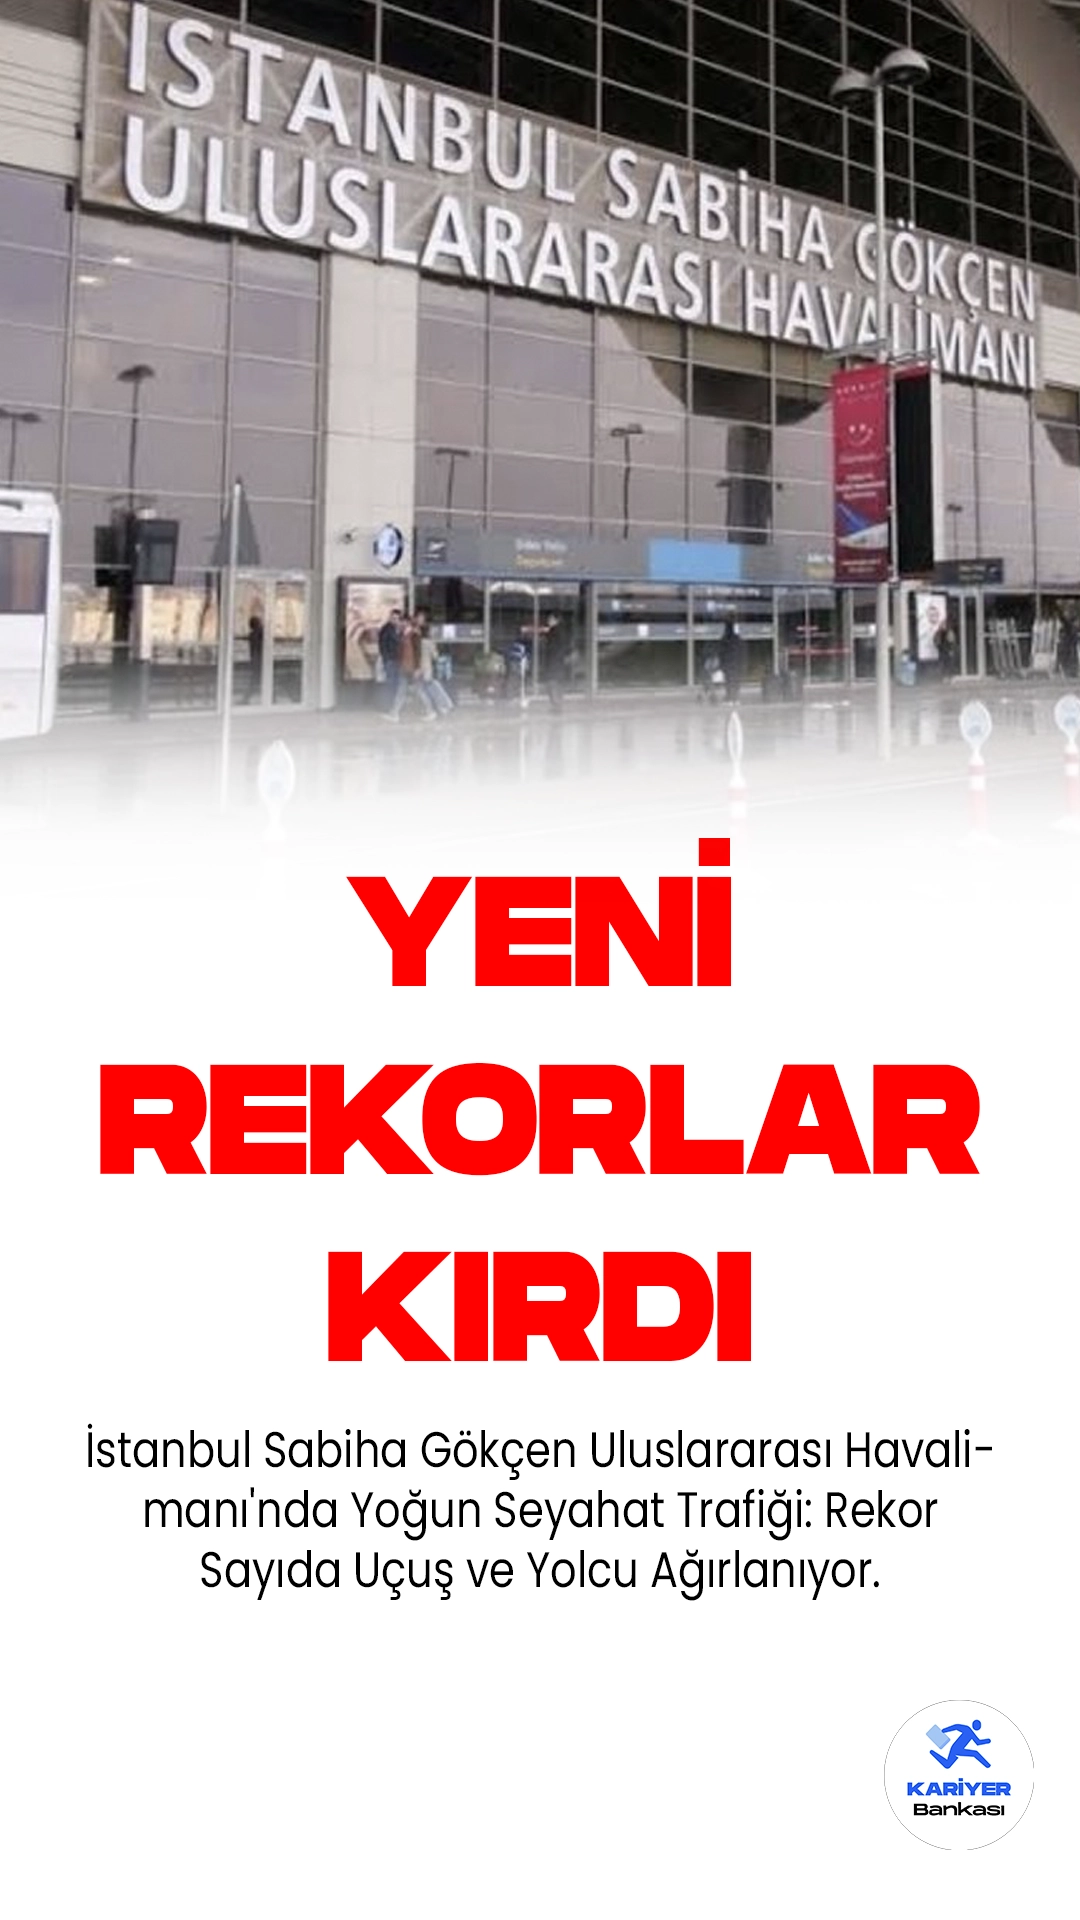 Sabiha Gökçen Havalimanı Yeni Rekorlar Kırdı.İstanbul Sabiha Gökçen Uluslararası Havalimanı'nda Yoğun Seyahat Trafiği: Rekor Sayıda Uçuş ve Yolcu Ağırlanıyor.